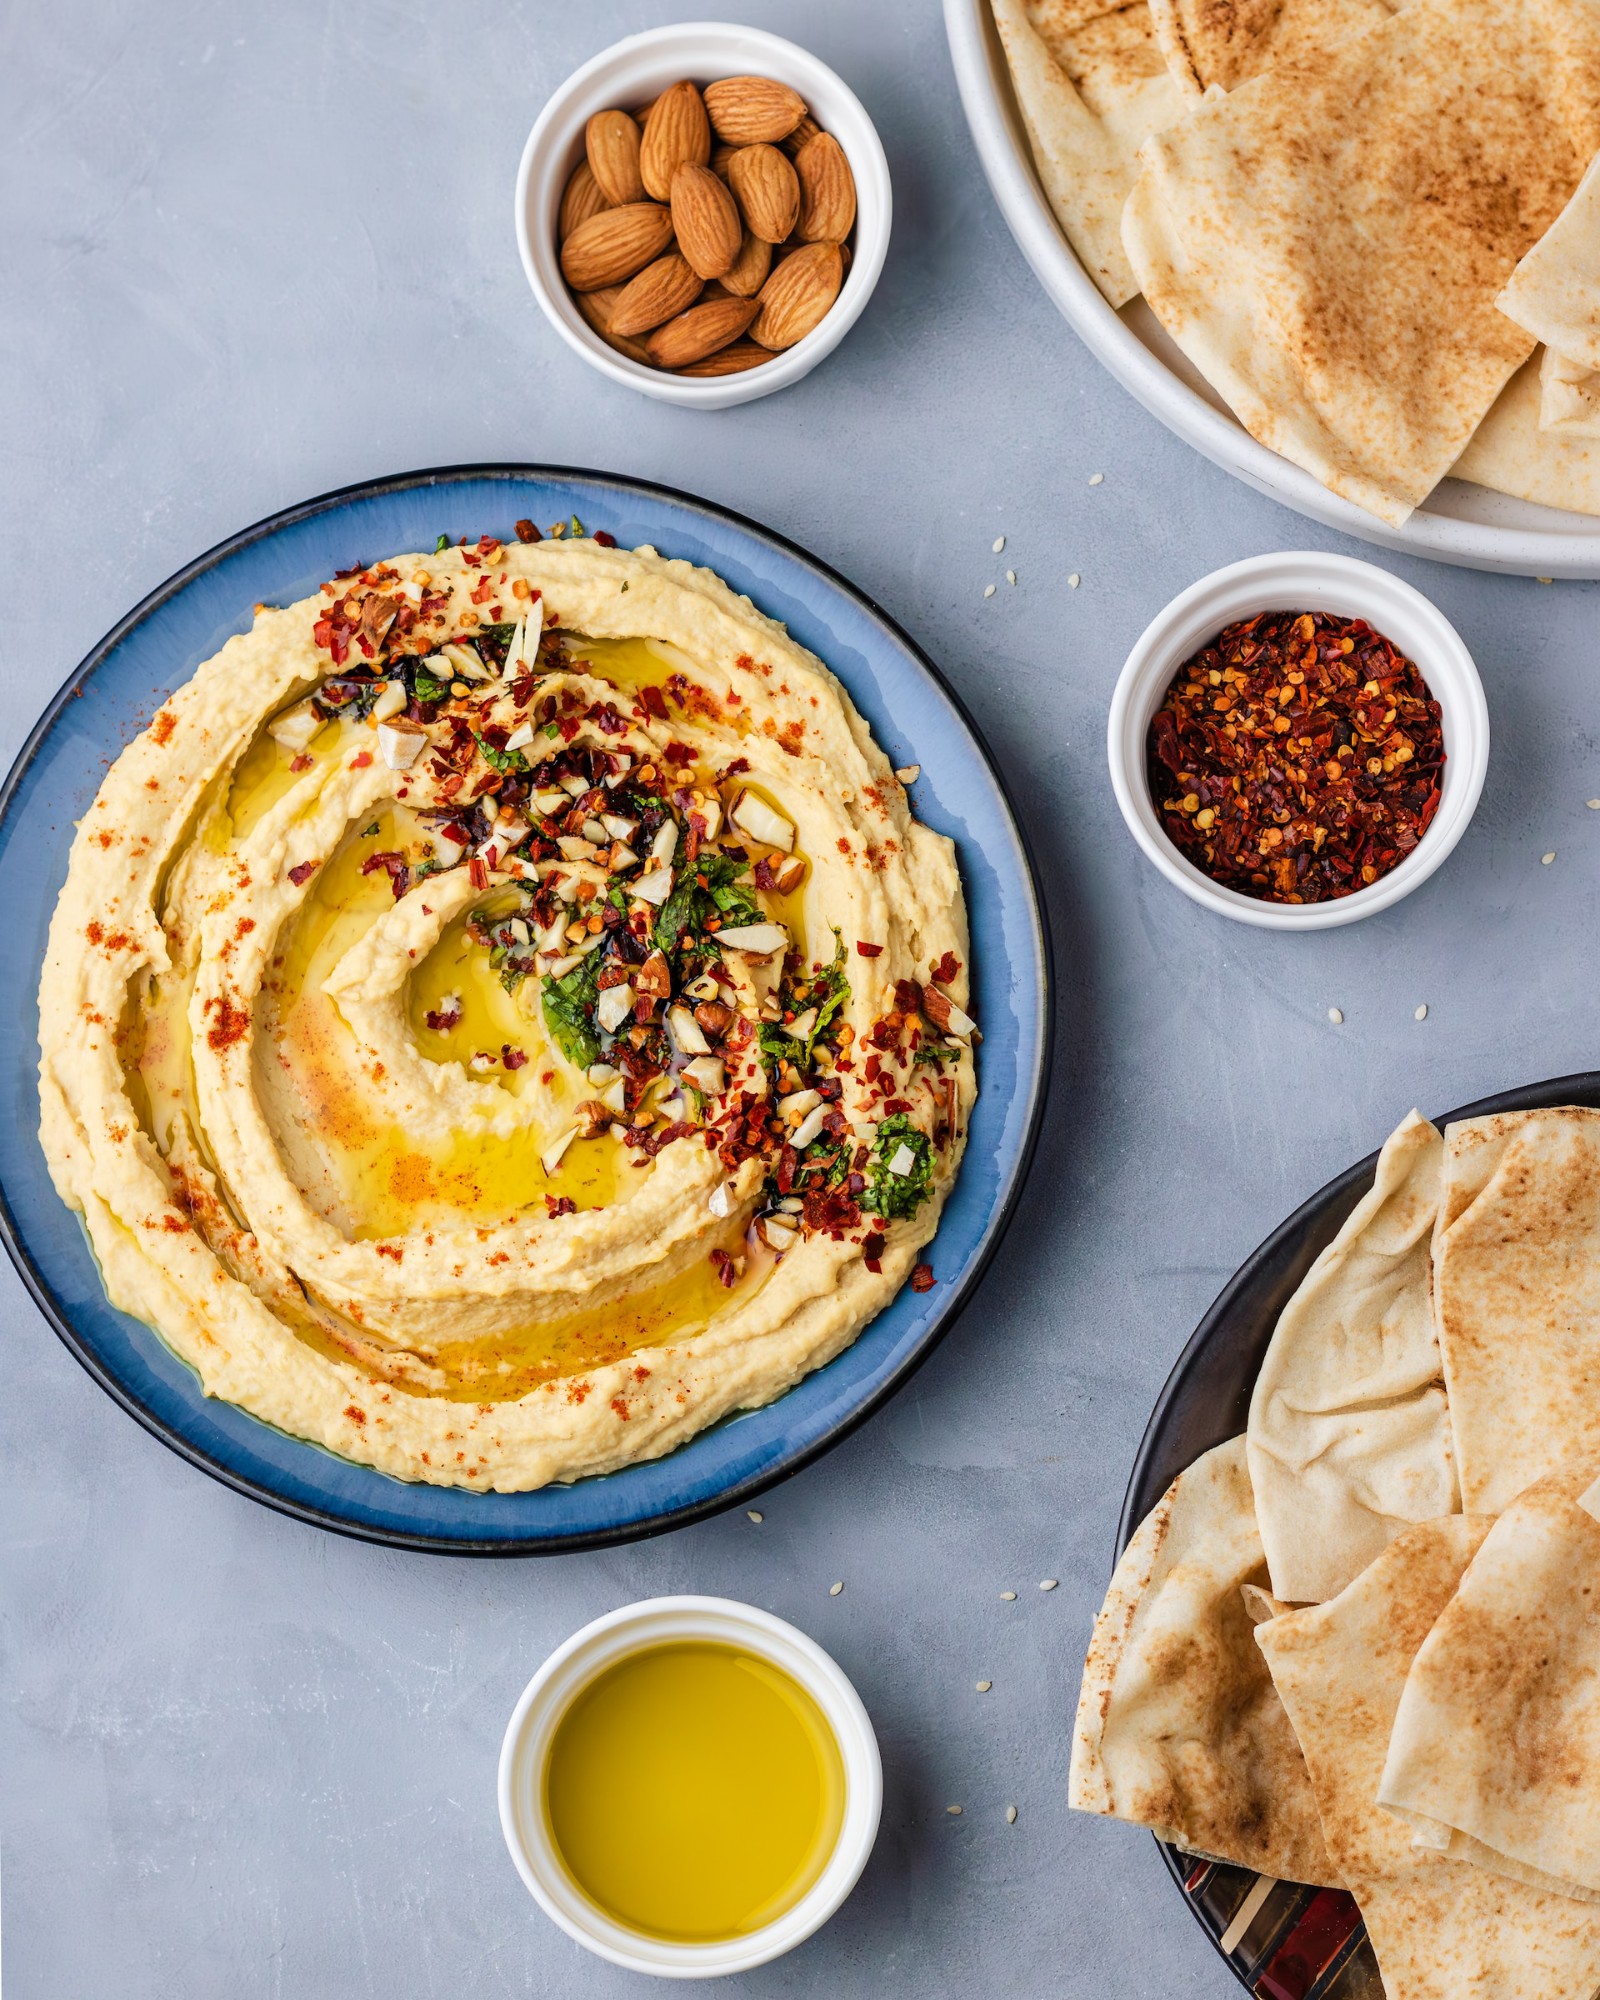 Is Hummus Gluten Free? Not Always